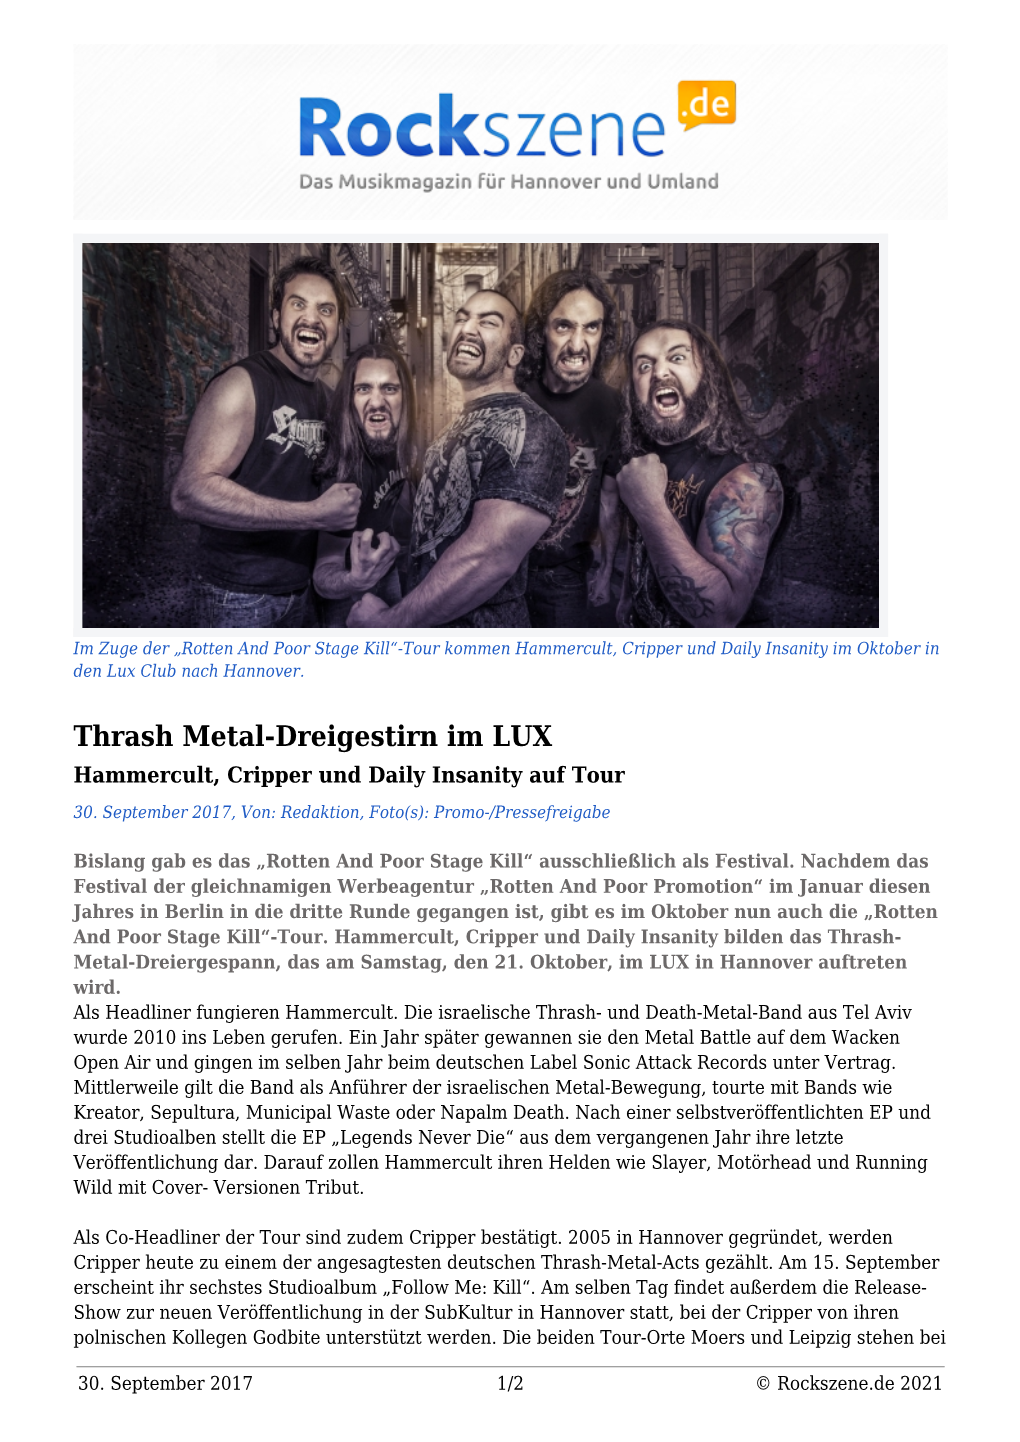 Thrash Metal-Dreigestirn Im LUX Hammercult, Cripper Und Daily Insanity Auf Tour